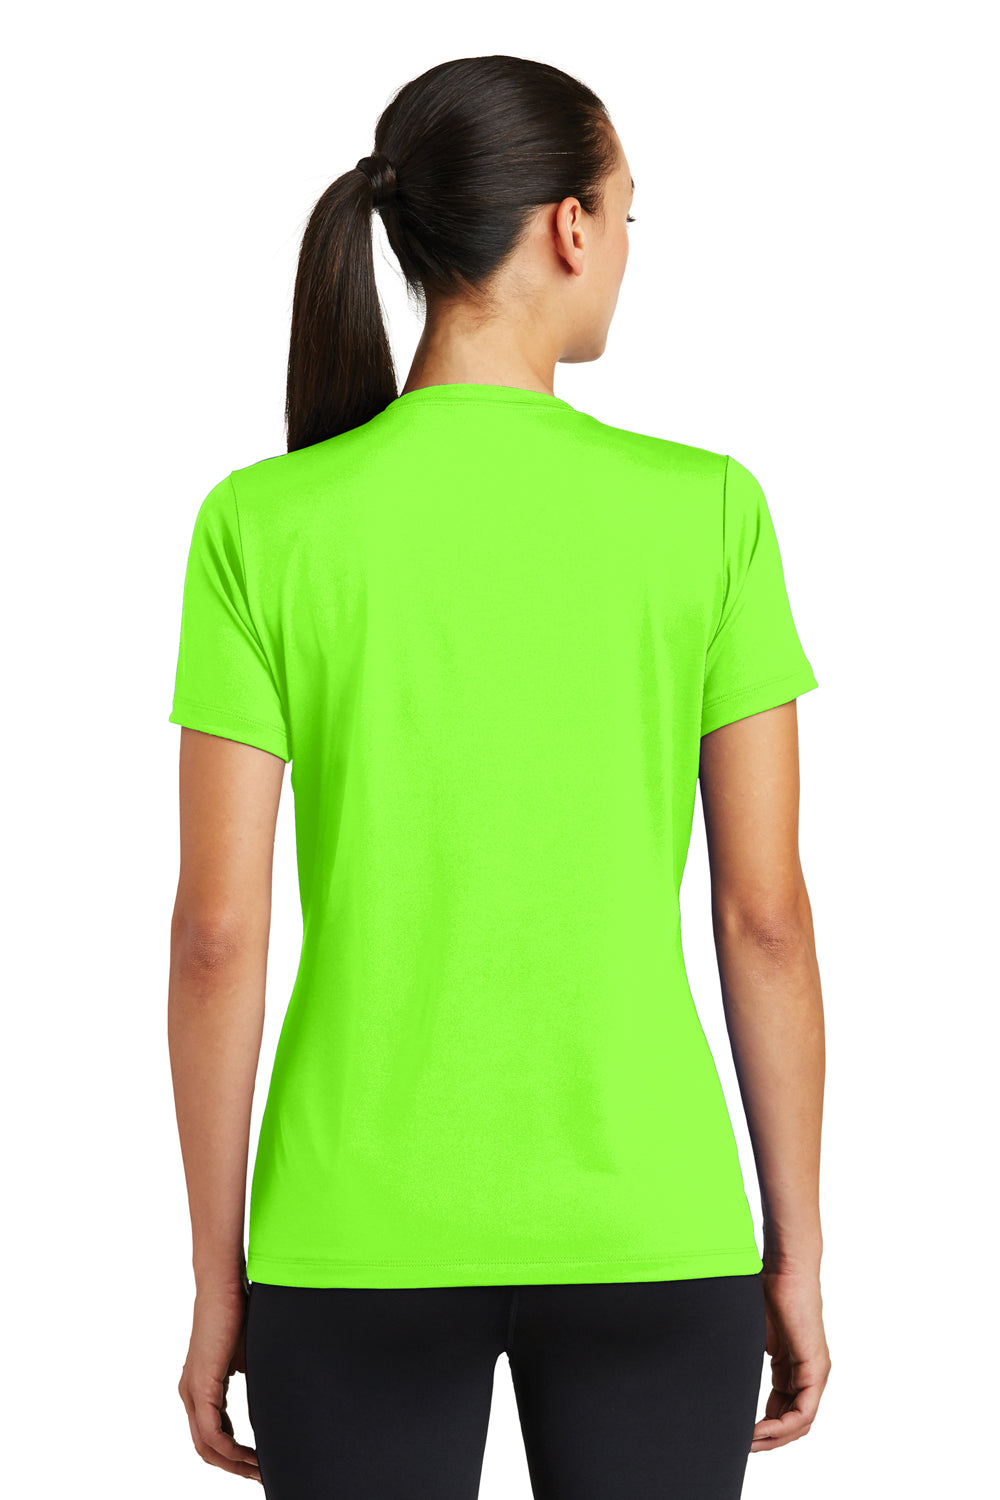 Sport-Tek LST320 Womens Tough Moisture Wicking Short Sleeve Crewneck T-Shirt Neon Green Back